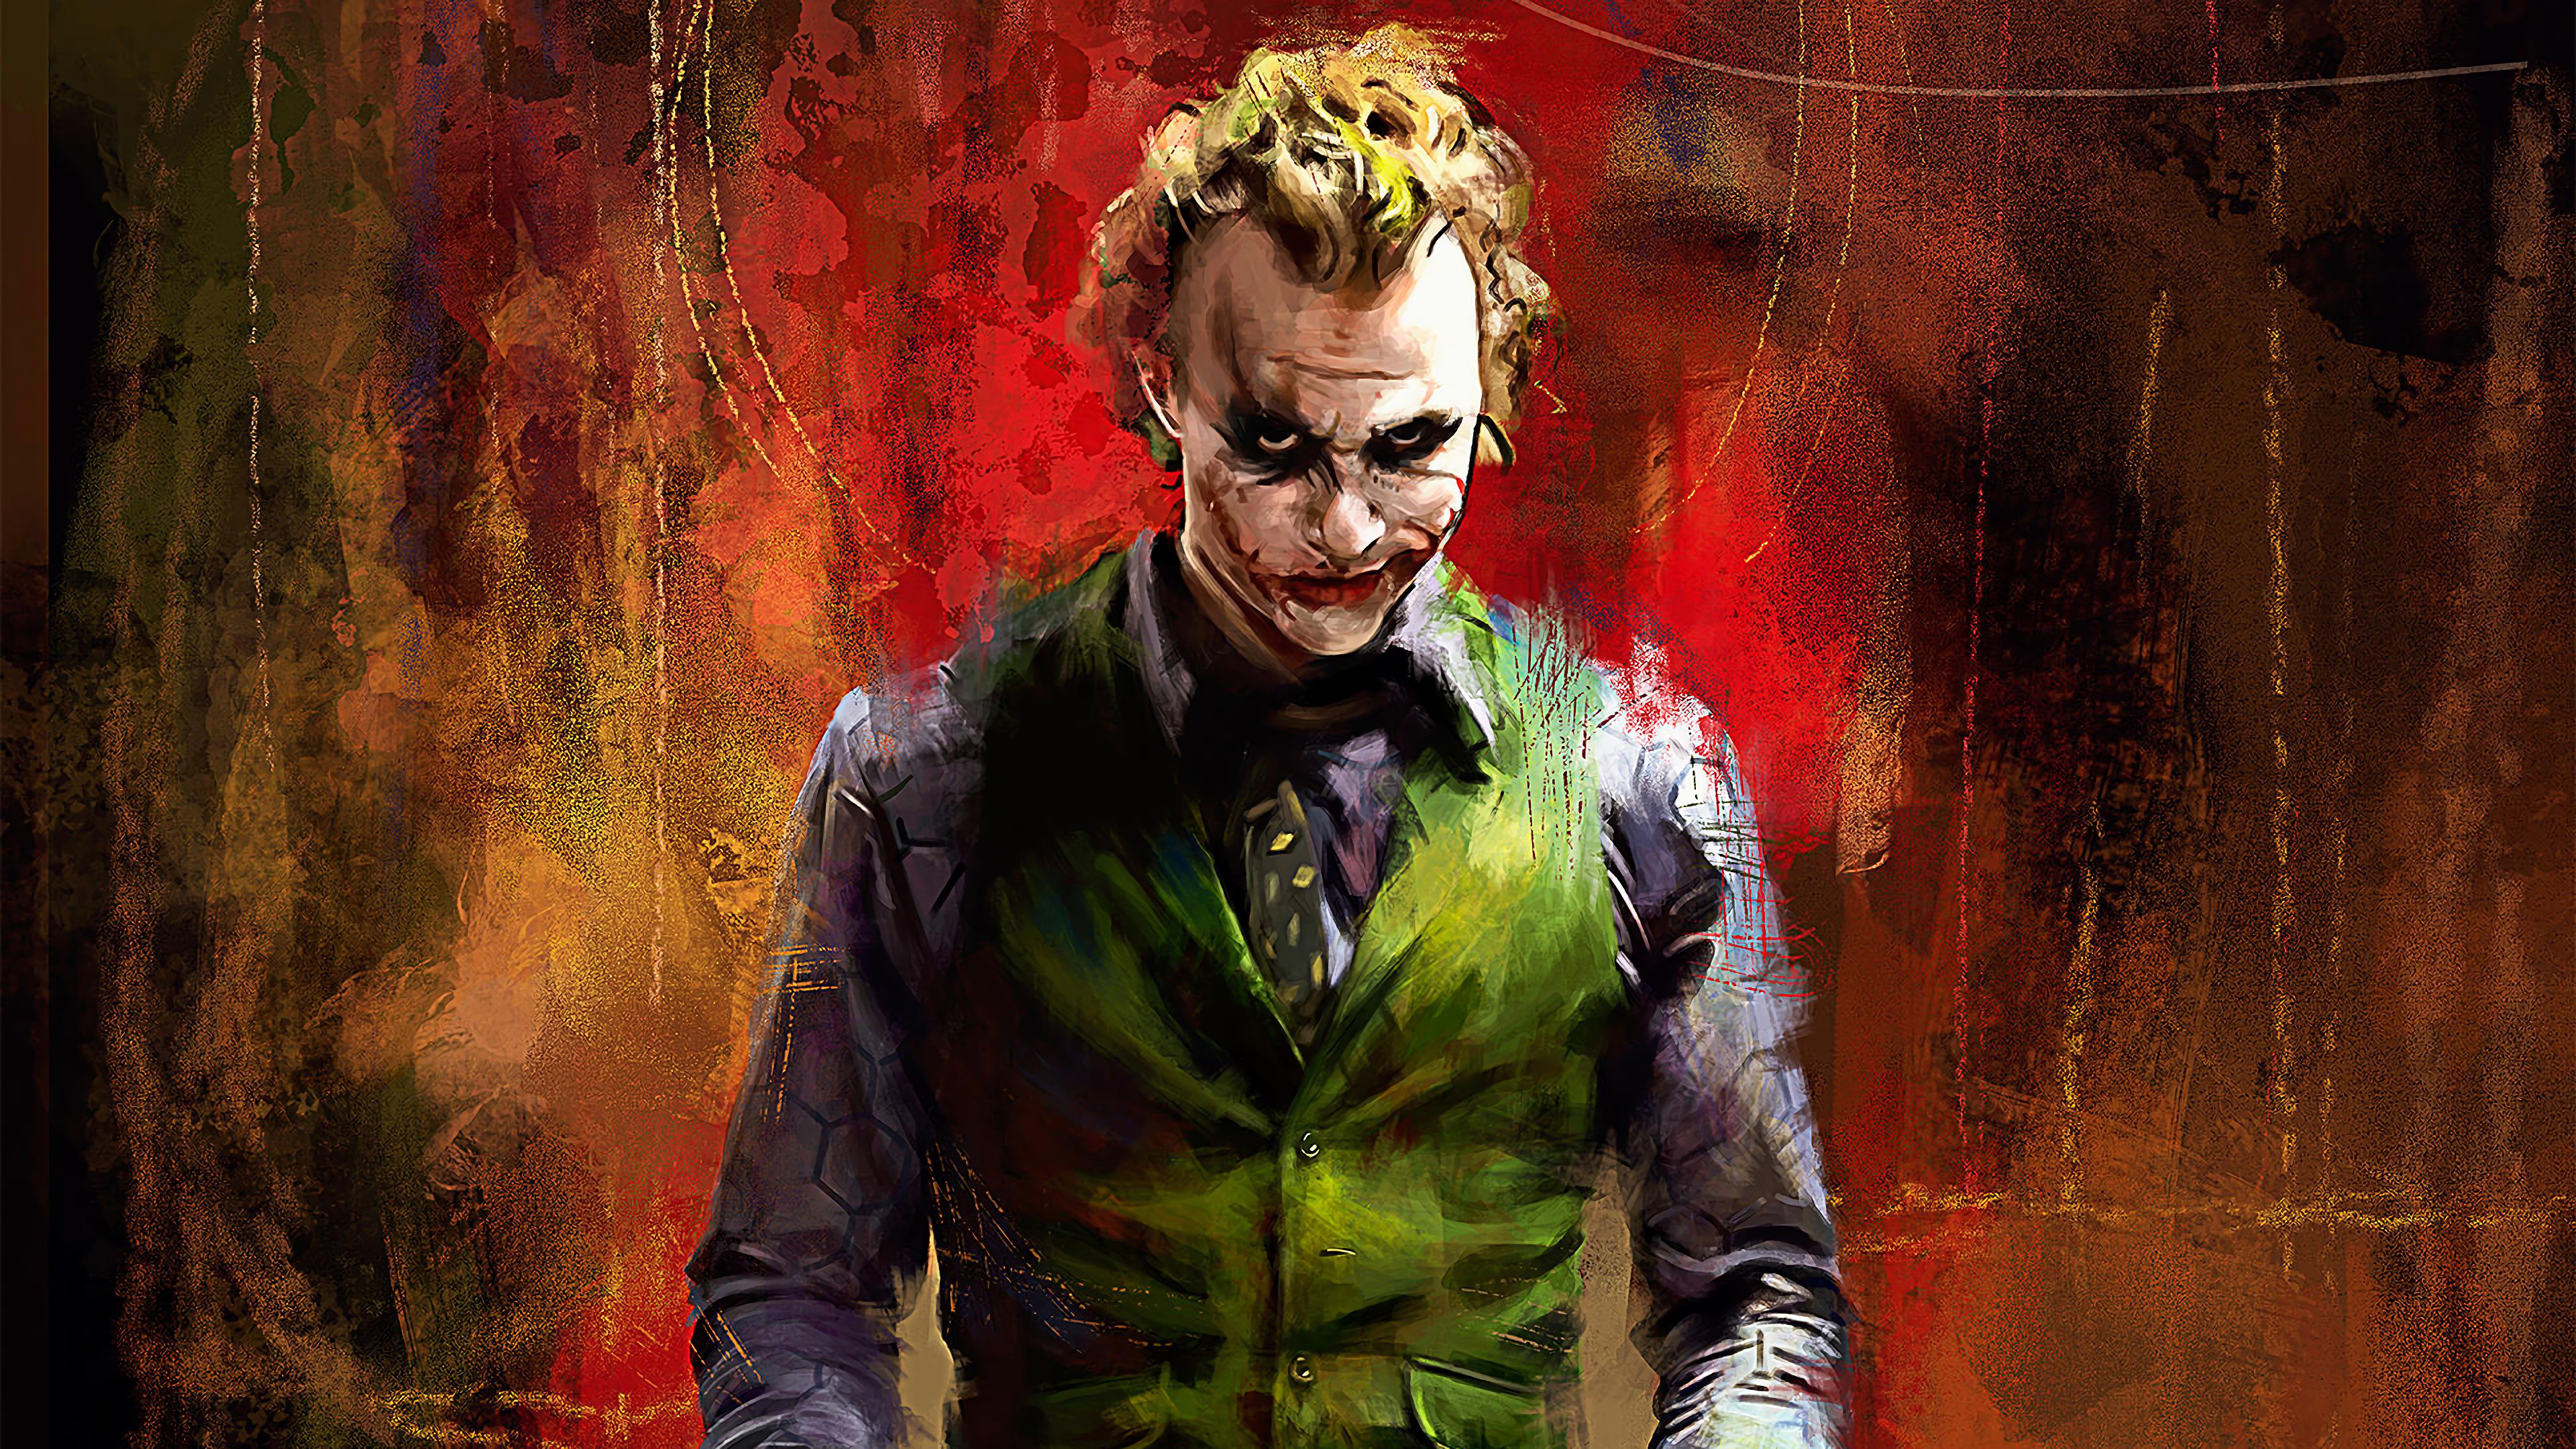 Joker, Heath Ledger, 4k, - Joker Heath Ledger Wallpaper 4k - 3840x2160  Wallpaper 